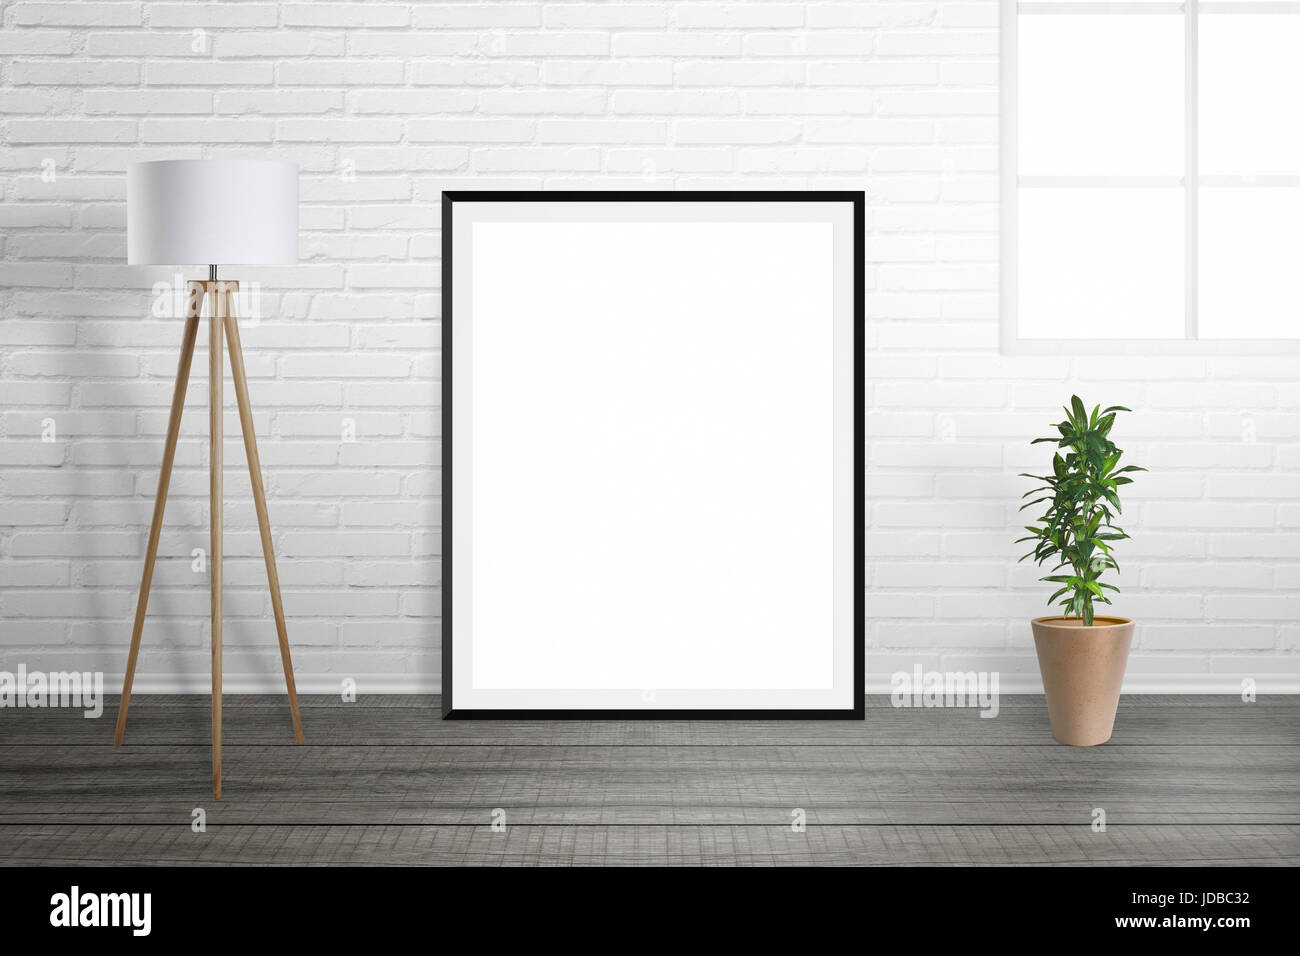 Fotogramma poster mockup. Sala interna con lampada e impianto. Muro di mattoni e una finestra in background. Foto Stock